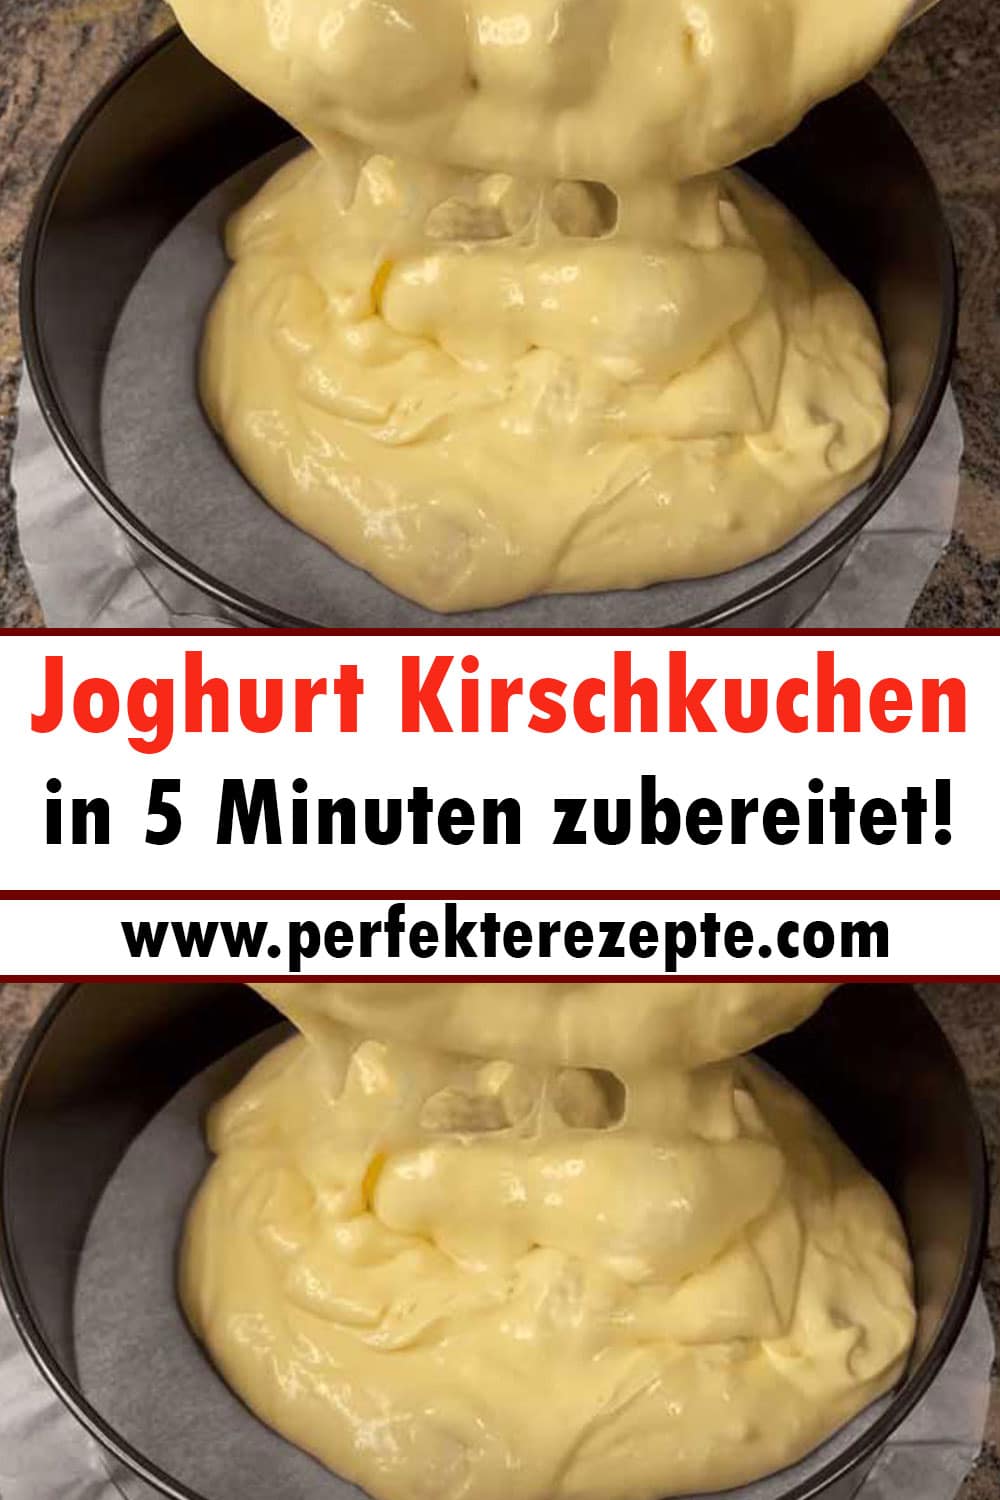 Joghurt Kirschkuchen Rezept in 5 Minuten zubereitet!